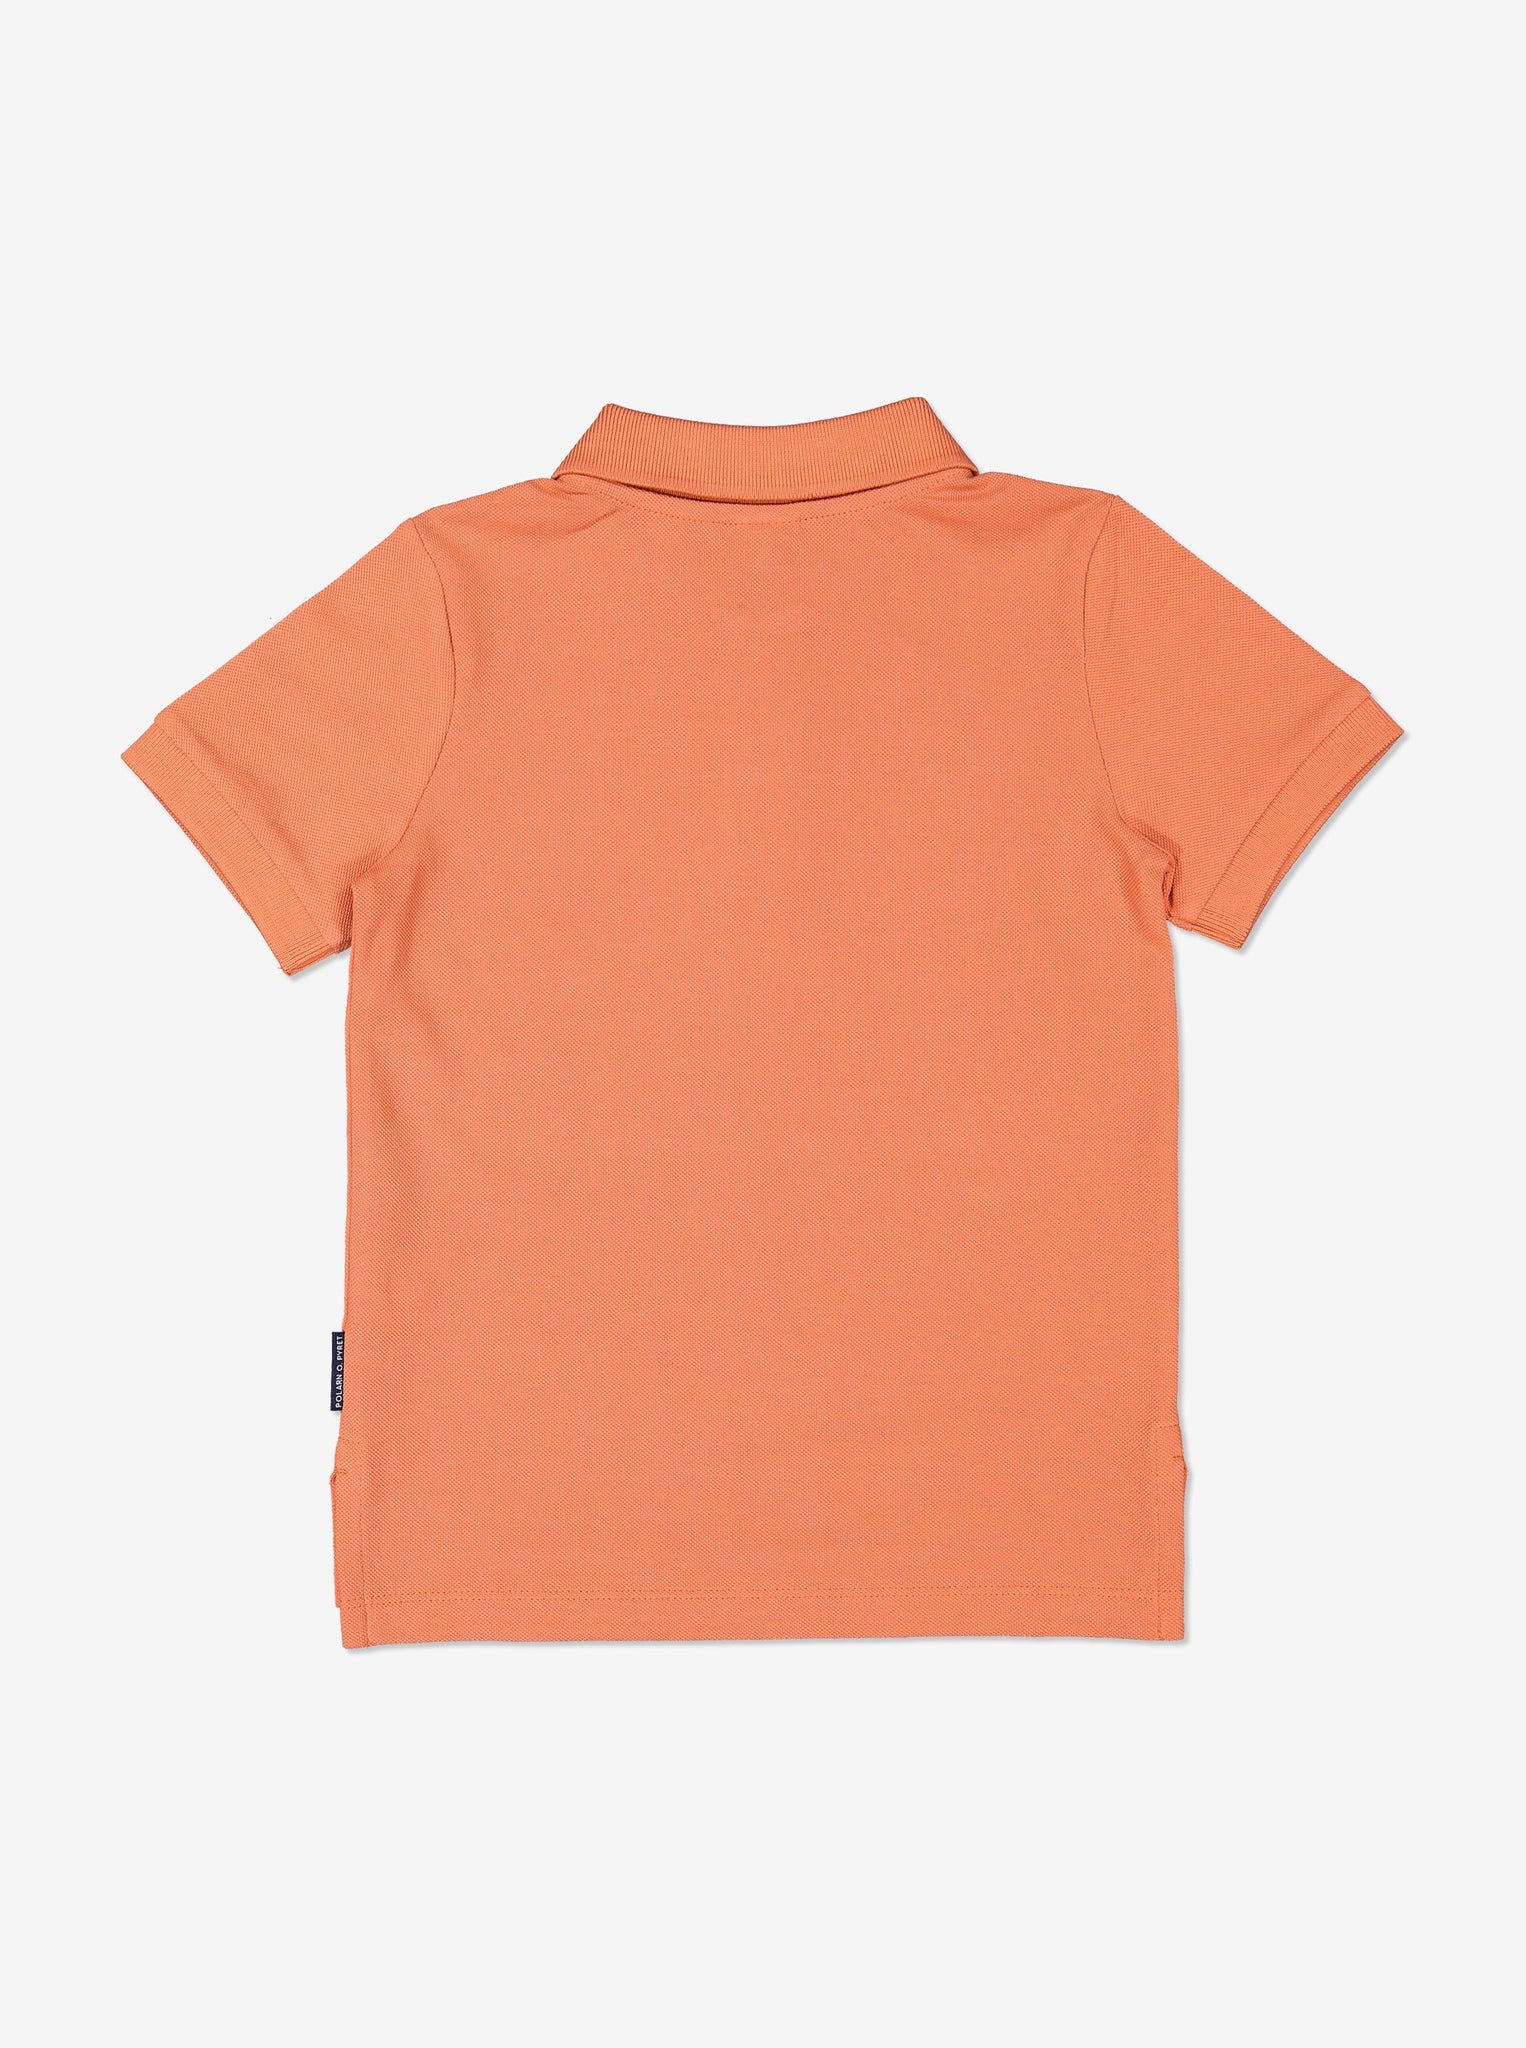 Boy Orange Kids Polo T-Shirt